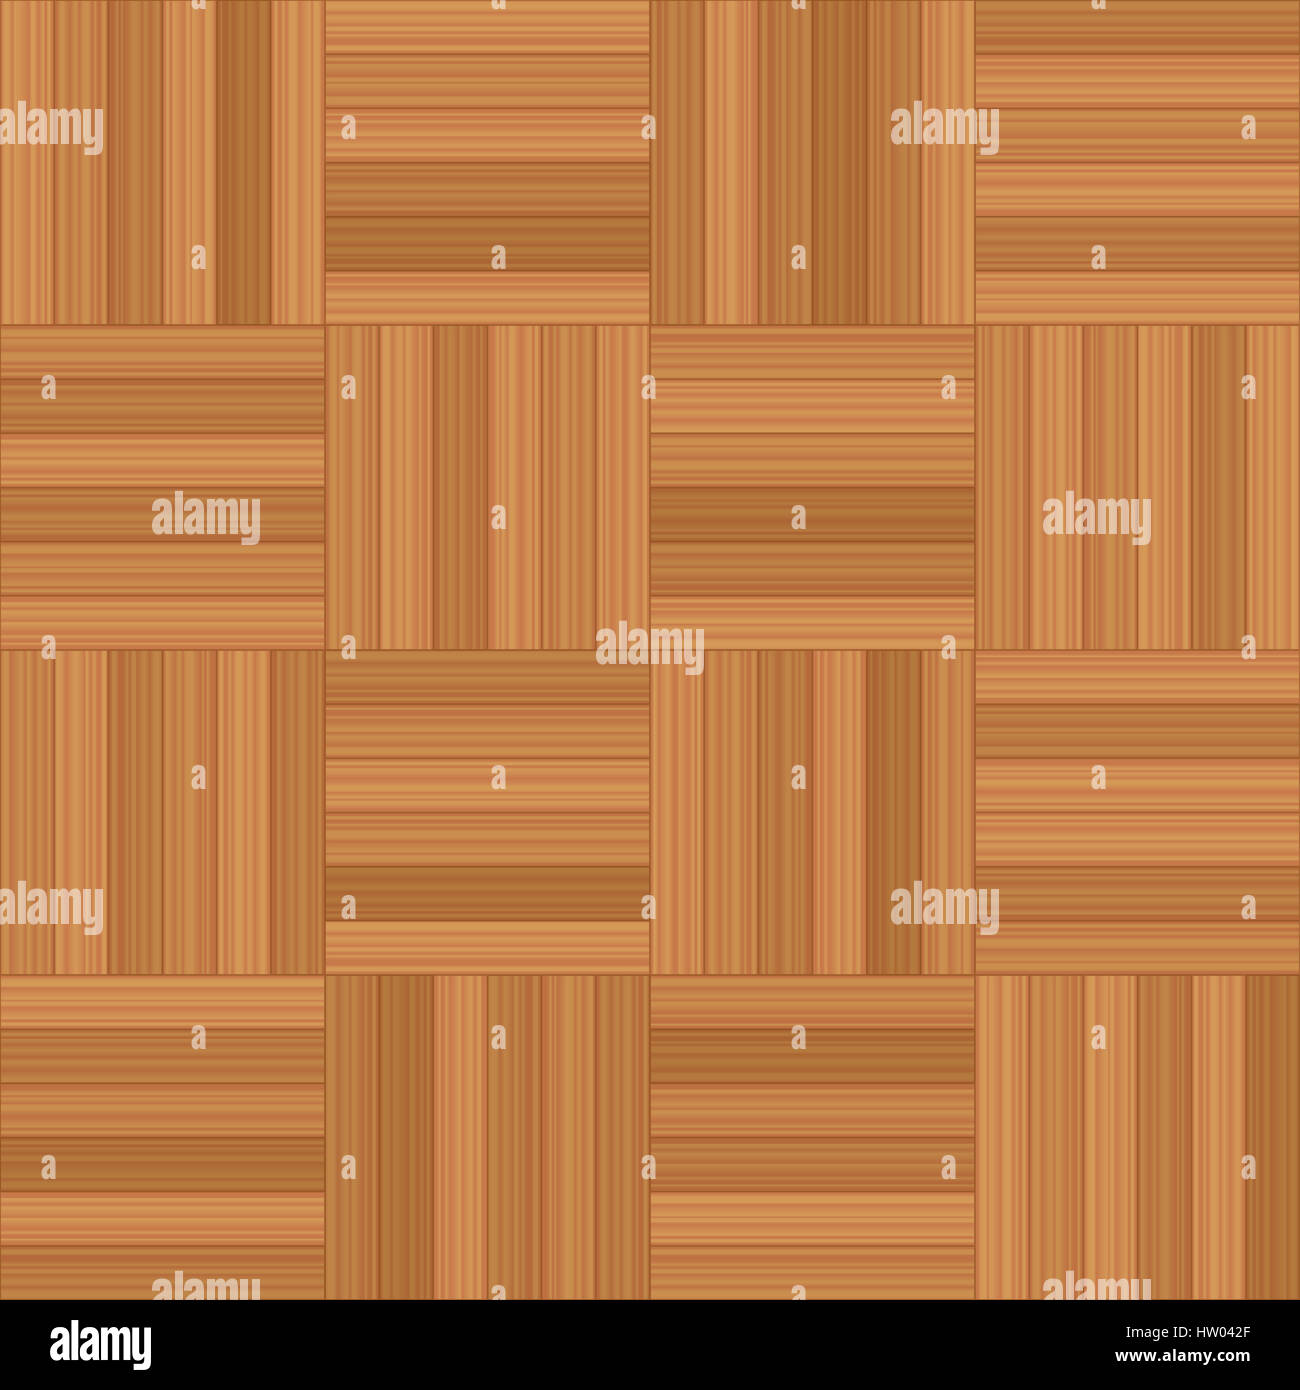 Mosaico parquet - illustrazione di quadrati di pavimento in legno del modello - seamless estensibile in tutte le direzioni. Foto Stock